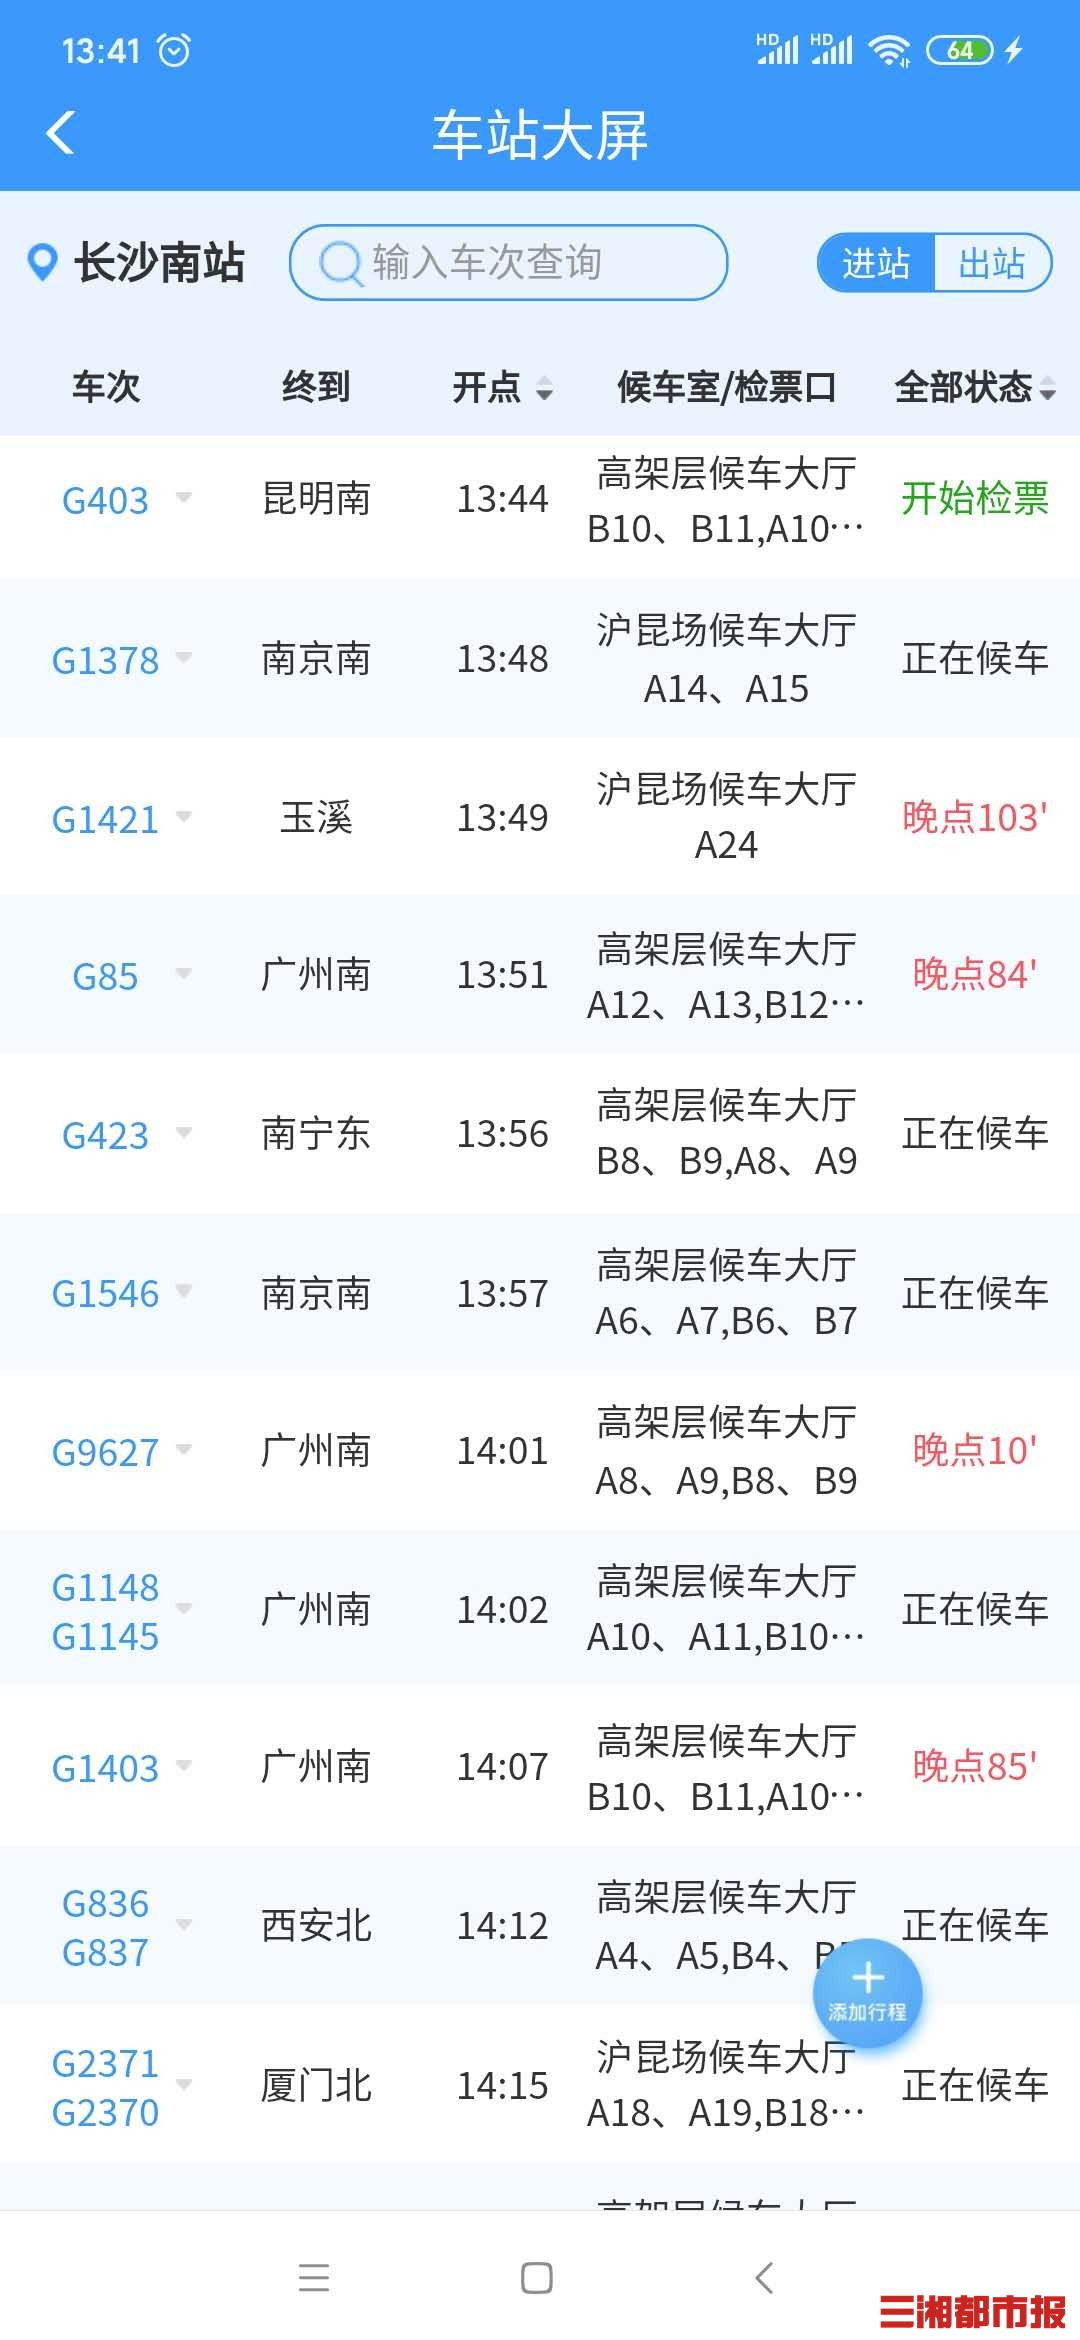 长沙黄花机场7个航班延误,长沙南站20余趟高铁晚点